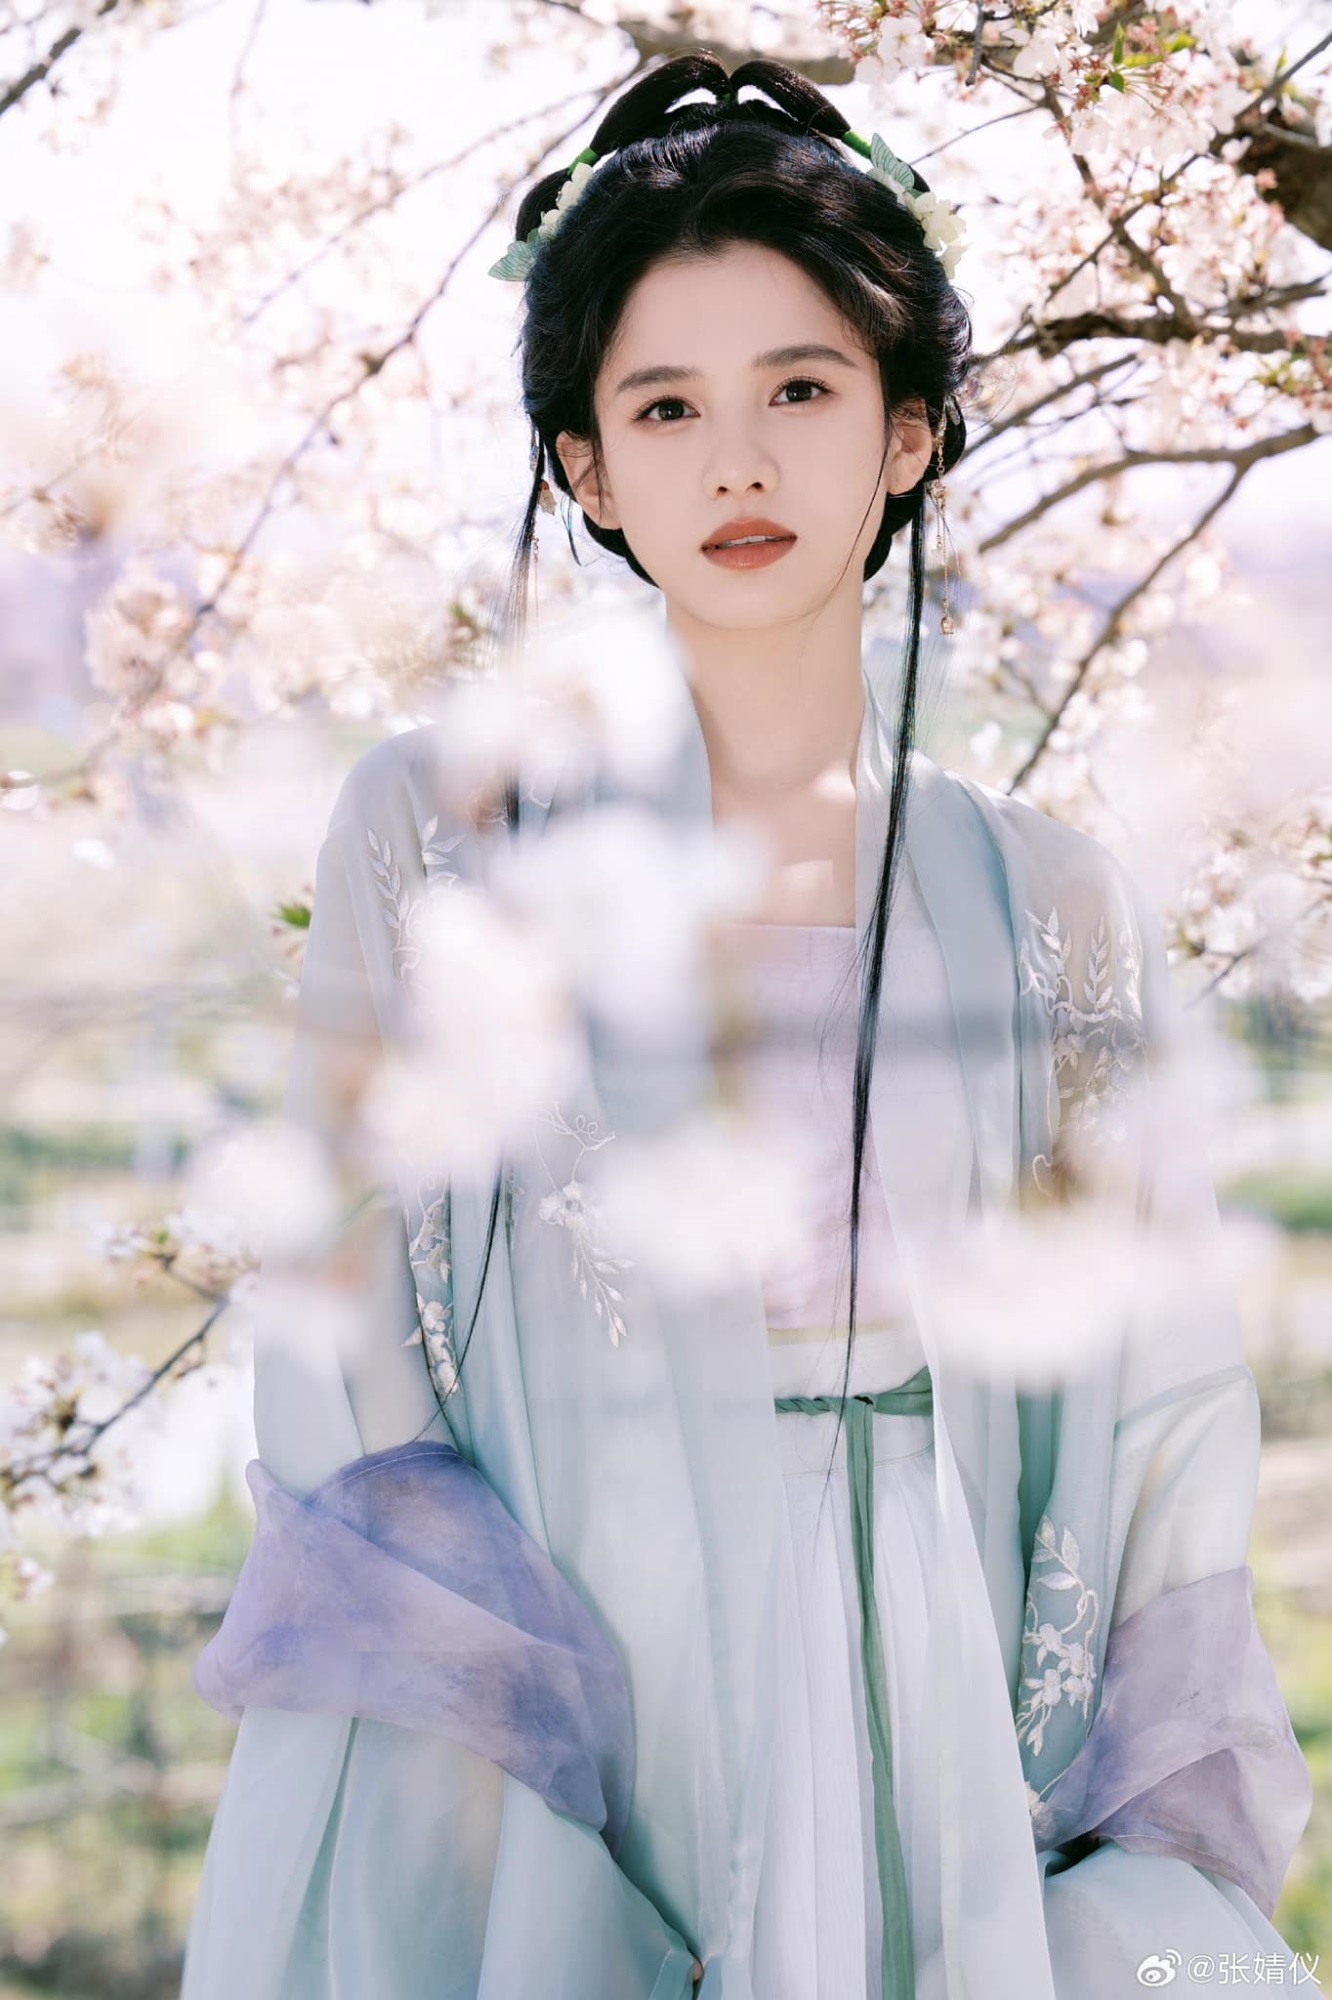 'Con gái cưng của Châu Tấn' Trương Tịnh Nghi 'gây bão' với bộ ảnh mỹ nhân cổ trang  - Ảnh 3